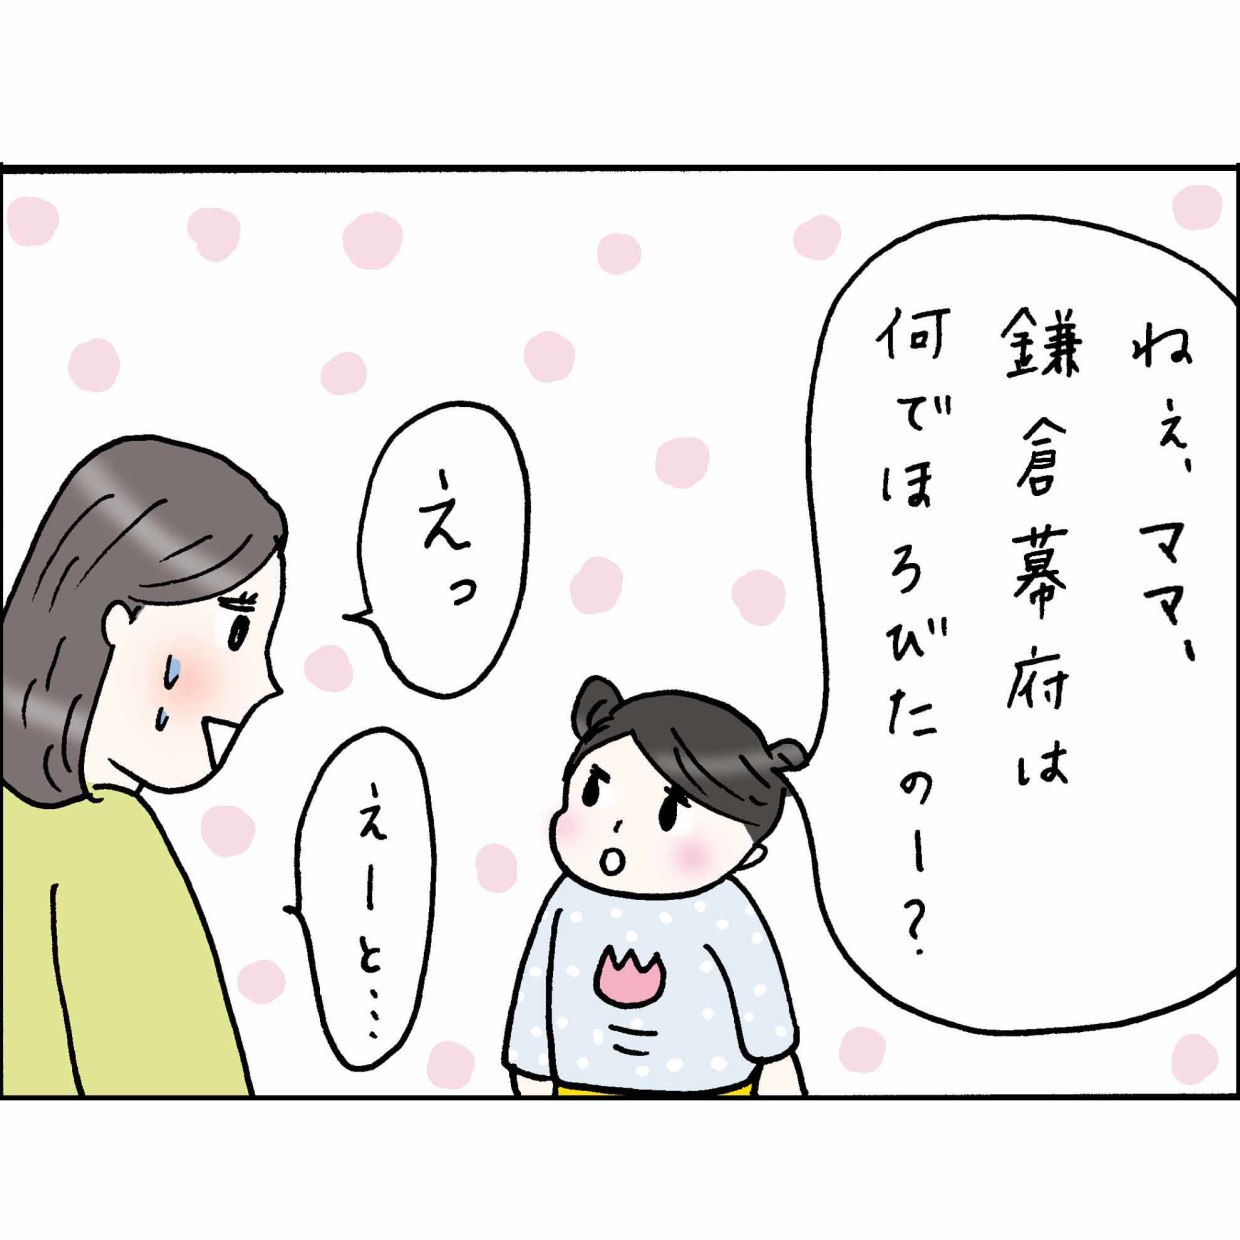 44歳、夫と二人の子どもがいる“佐藤くみ子”の日常を描く4コマ漫画『妻でありママでもある。でも"わたしらしく”生きる』